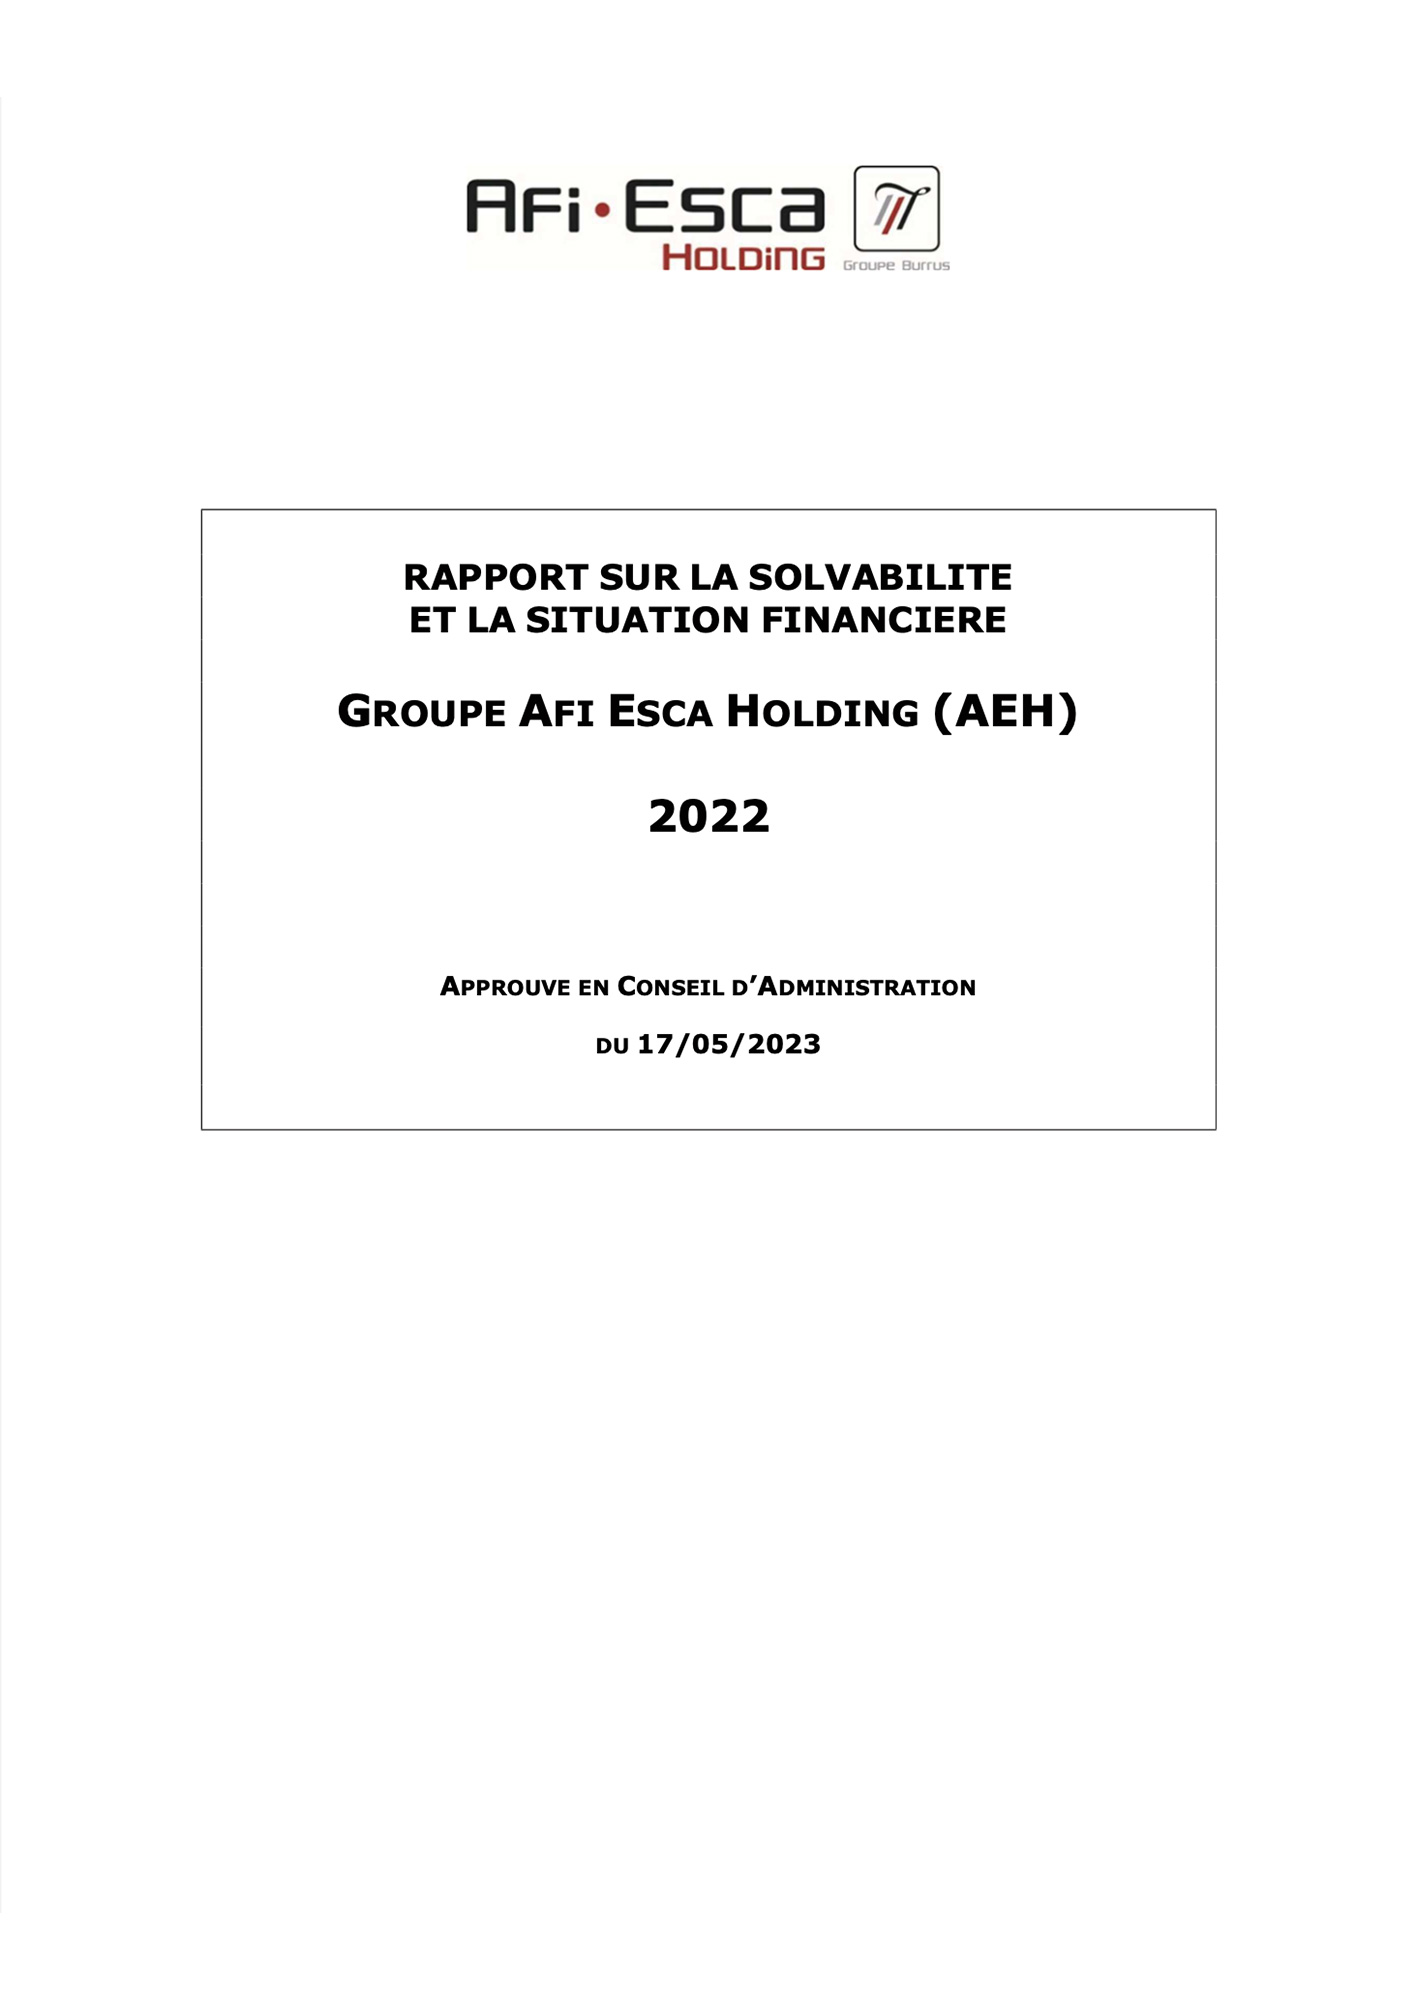 HET VERSLAG OVER DE SOLVABILITEIT EN DE FINANCIËLE TOESTAND 2022 VAN DE GECONSOLIDEERDE GROEP 2022